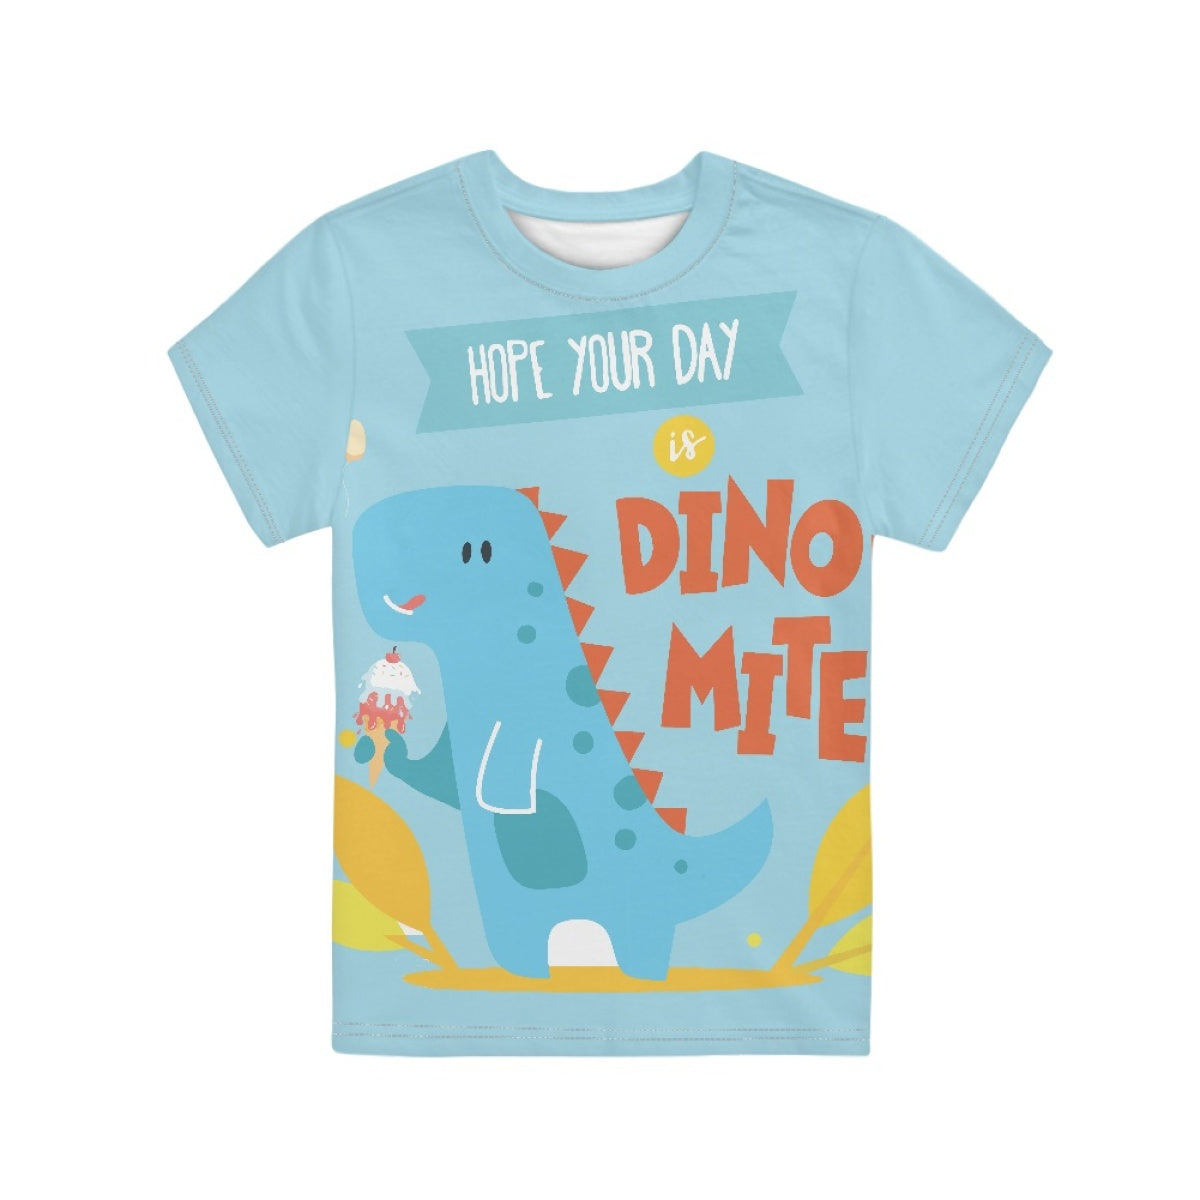 Dinosaur Kids T-Shirt